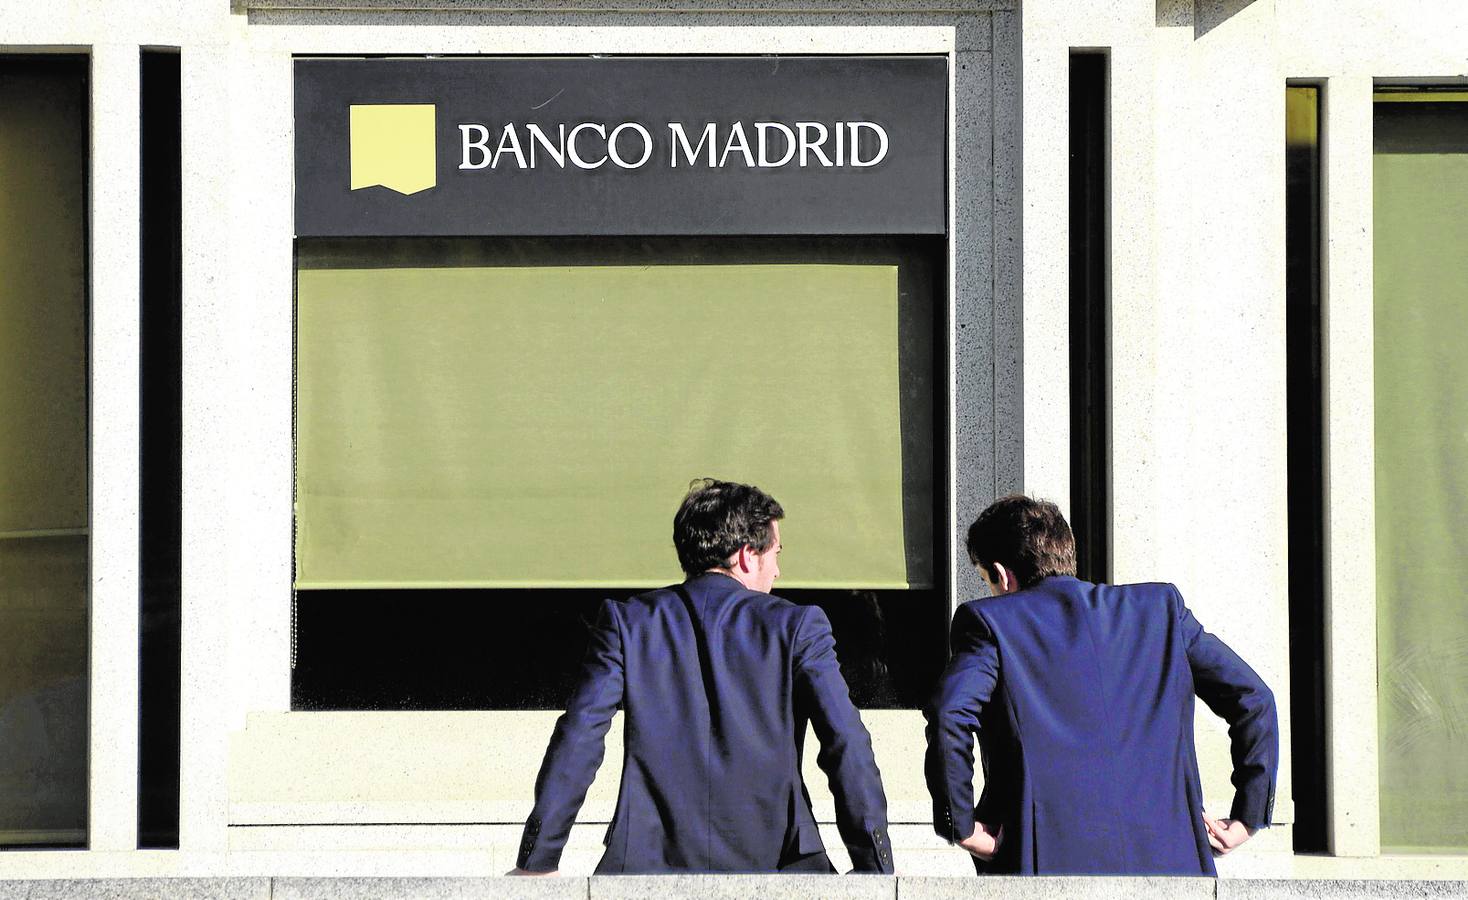 Banco Madrid desbloquea 160 millones de euros de grandes fortunas valencianas